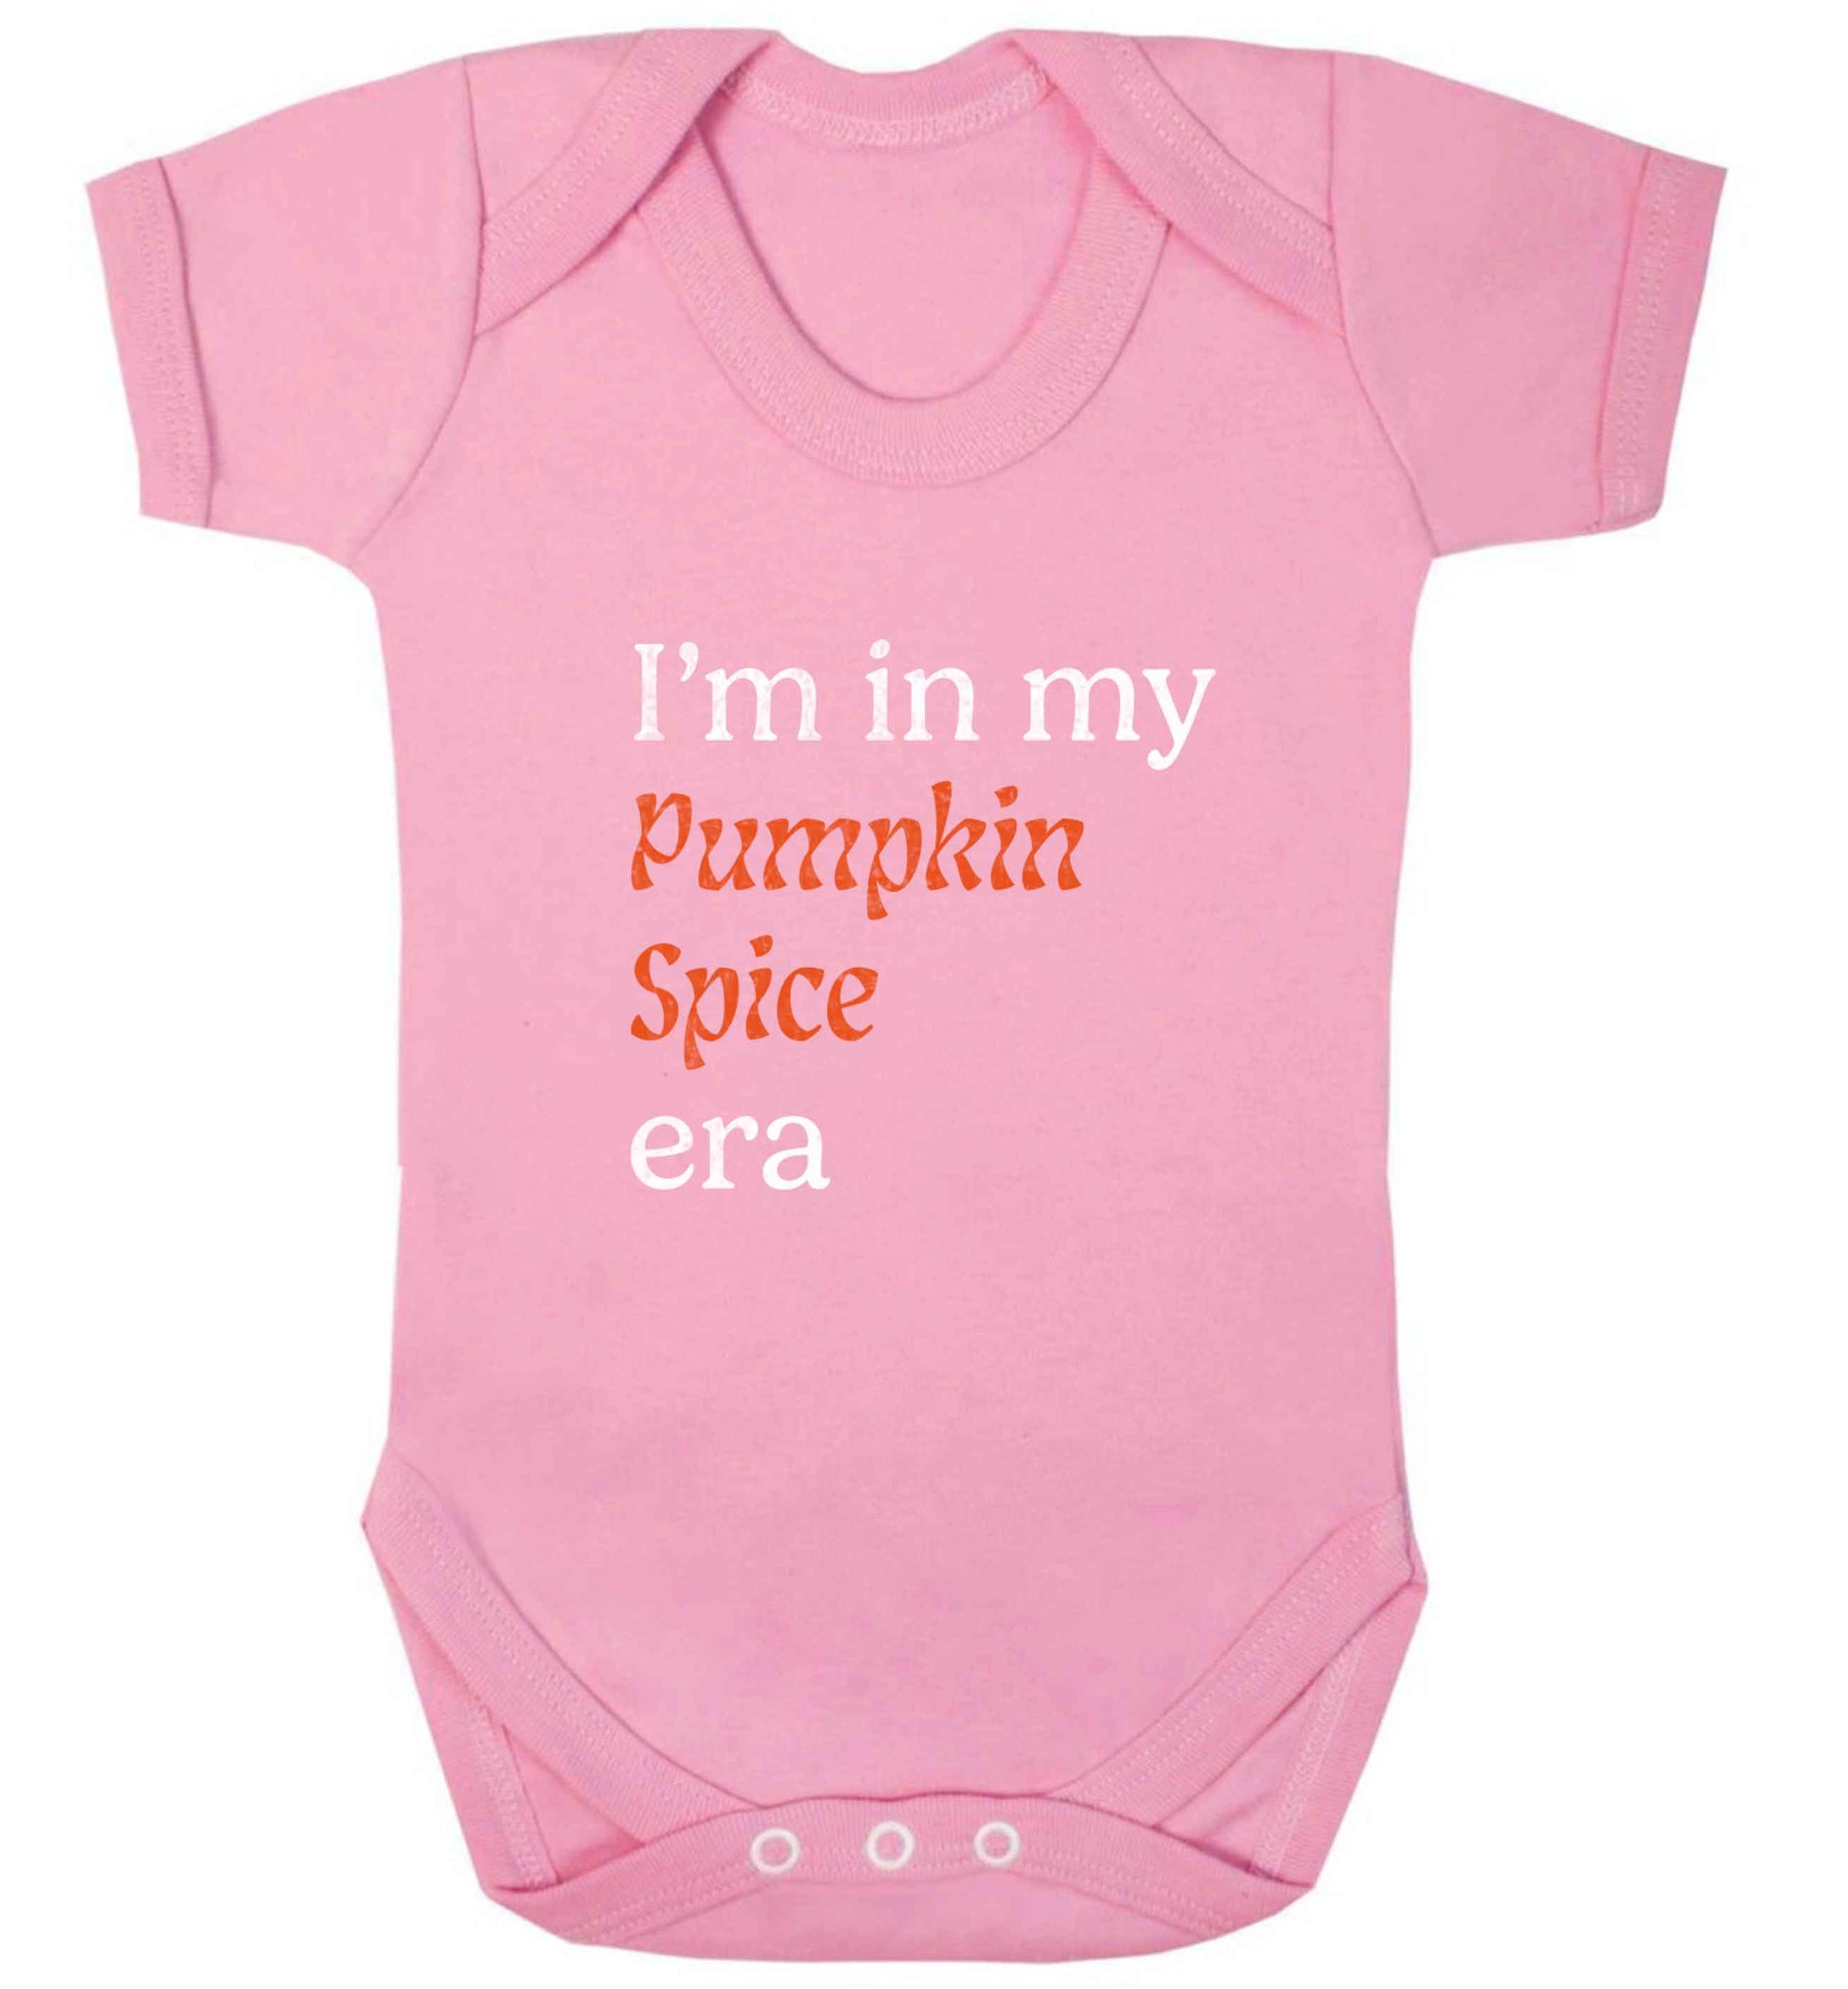 I'm in my pumpkin spice era Kit baby vest pale pink 18-24 months